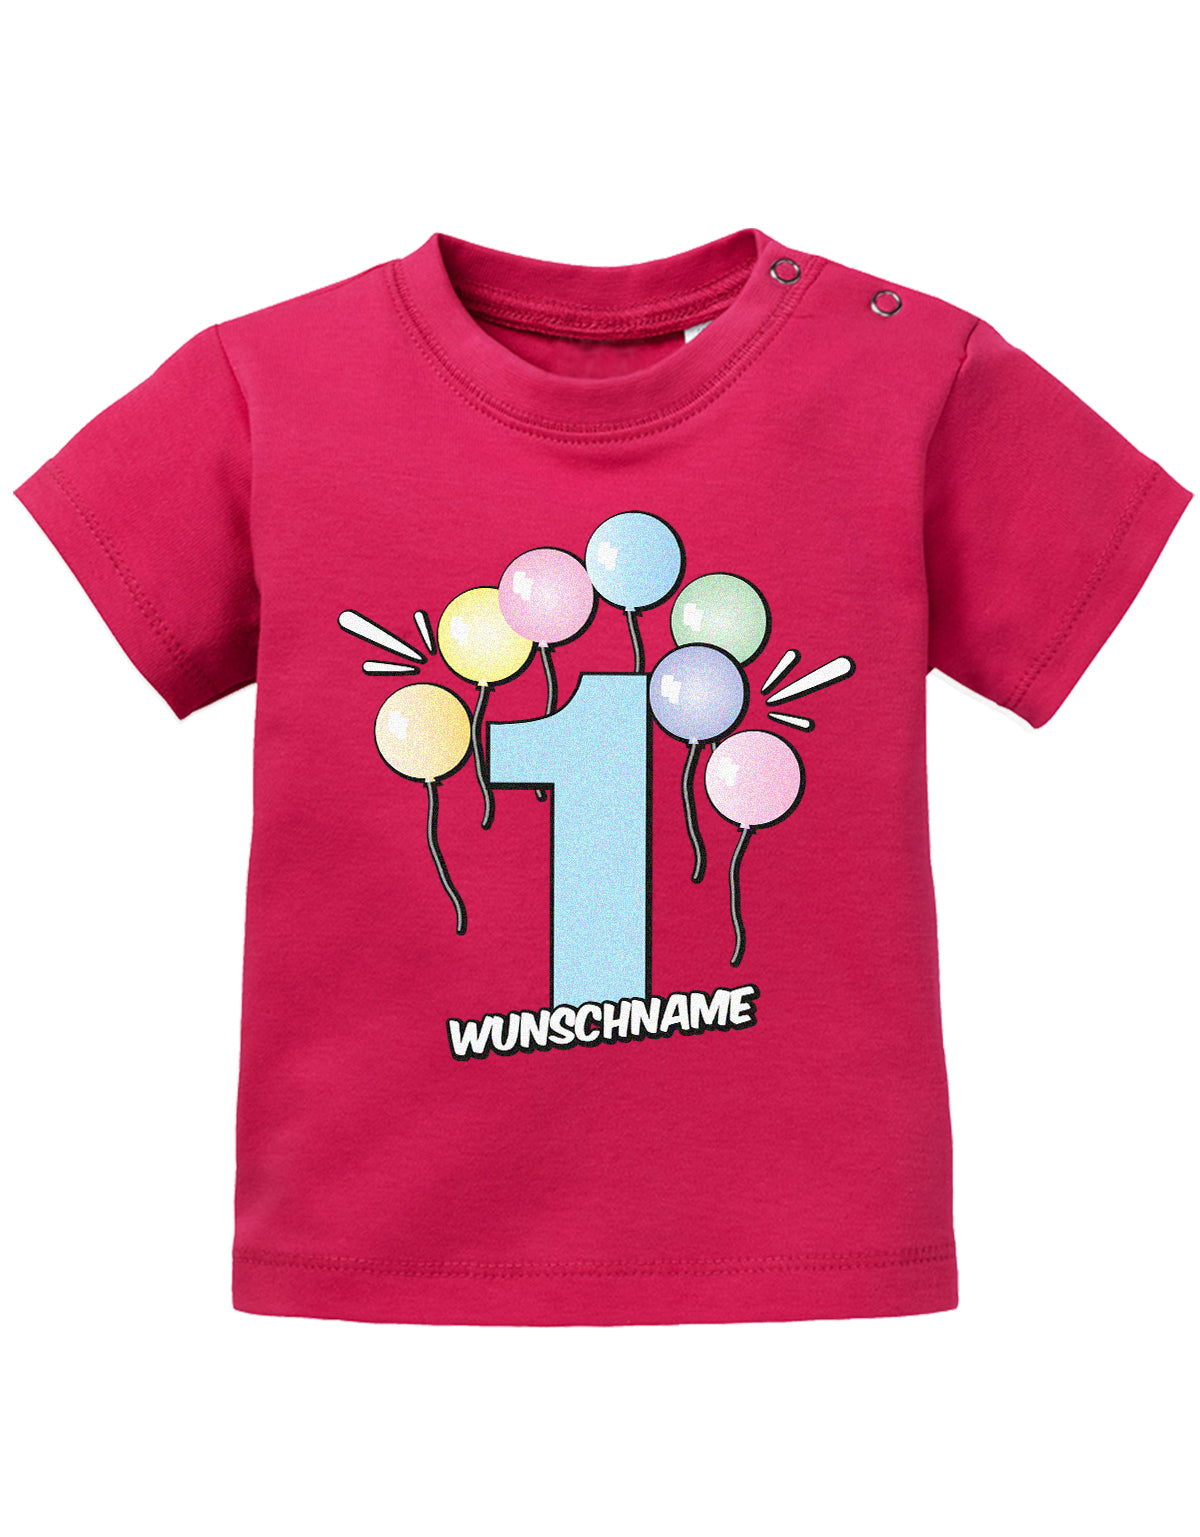 Baby T-Shirt erster Geburtstag mit Ballons und Wunschnamen-sorbet